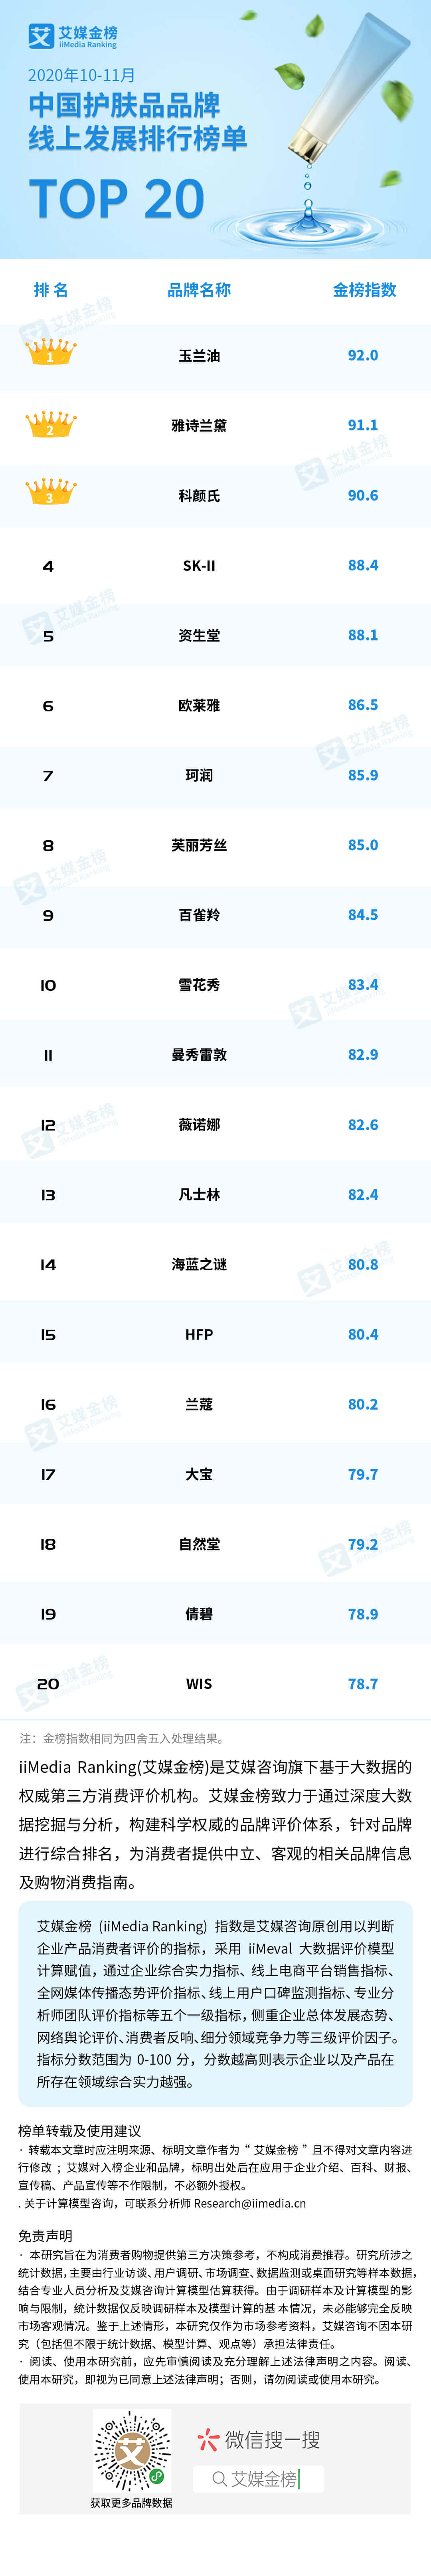 10-11月中国护肤品品牌线上发展排行榜单TOP